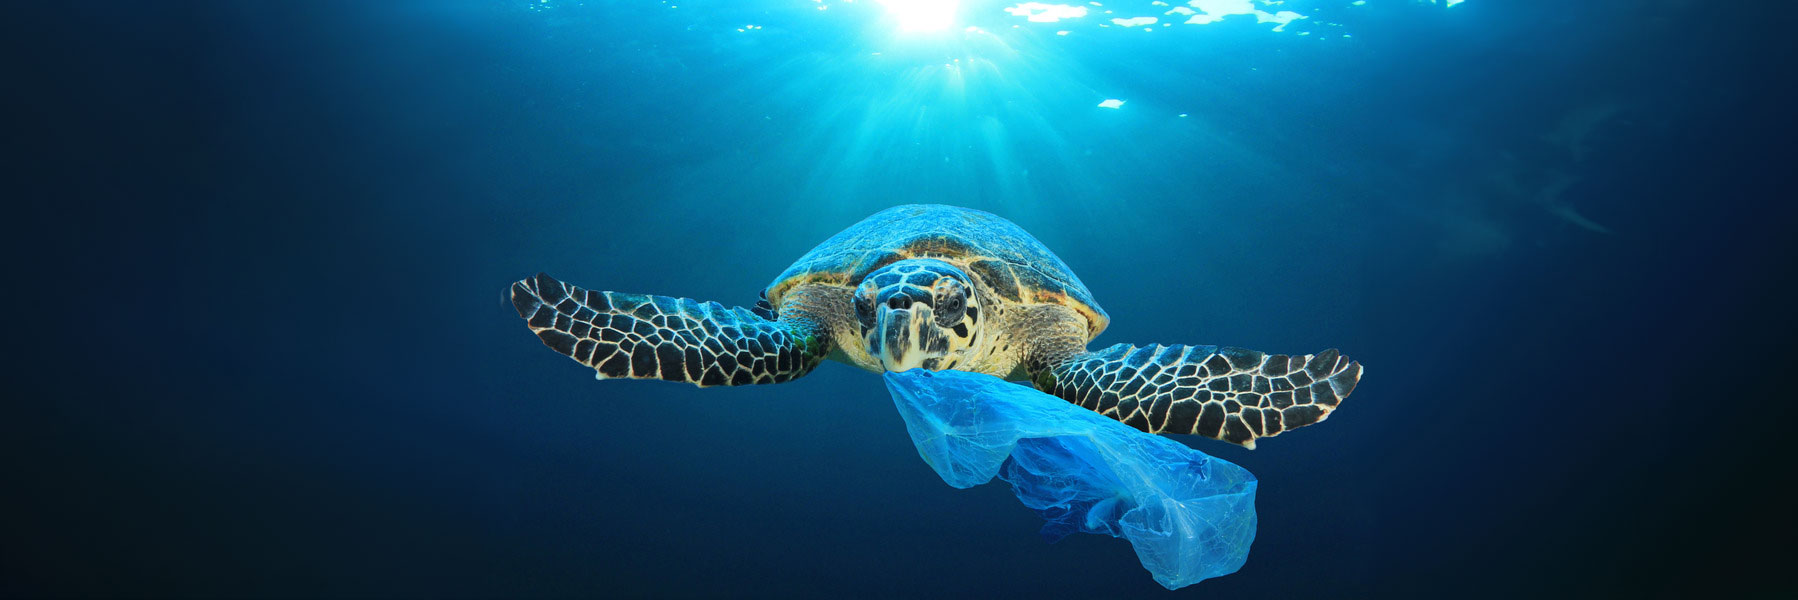 Julio Libre de Plástico nos anima a todos a reducir los residuos plásticos - article image